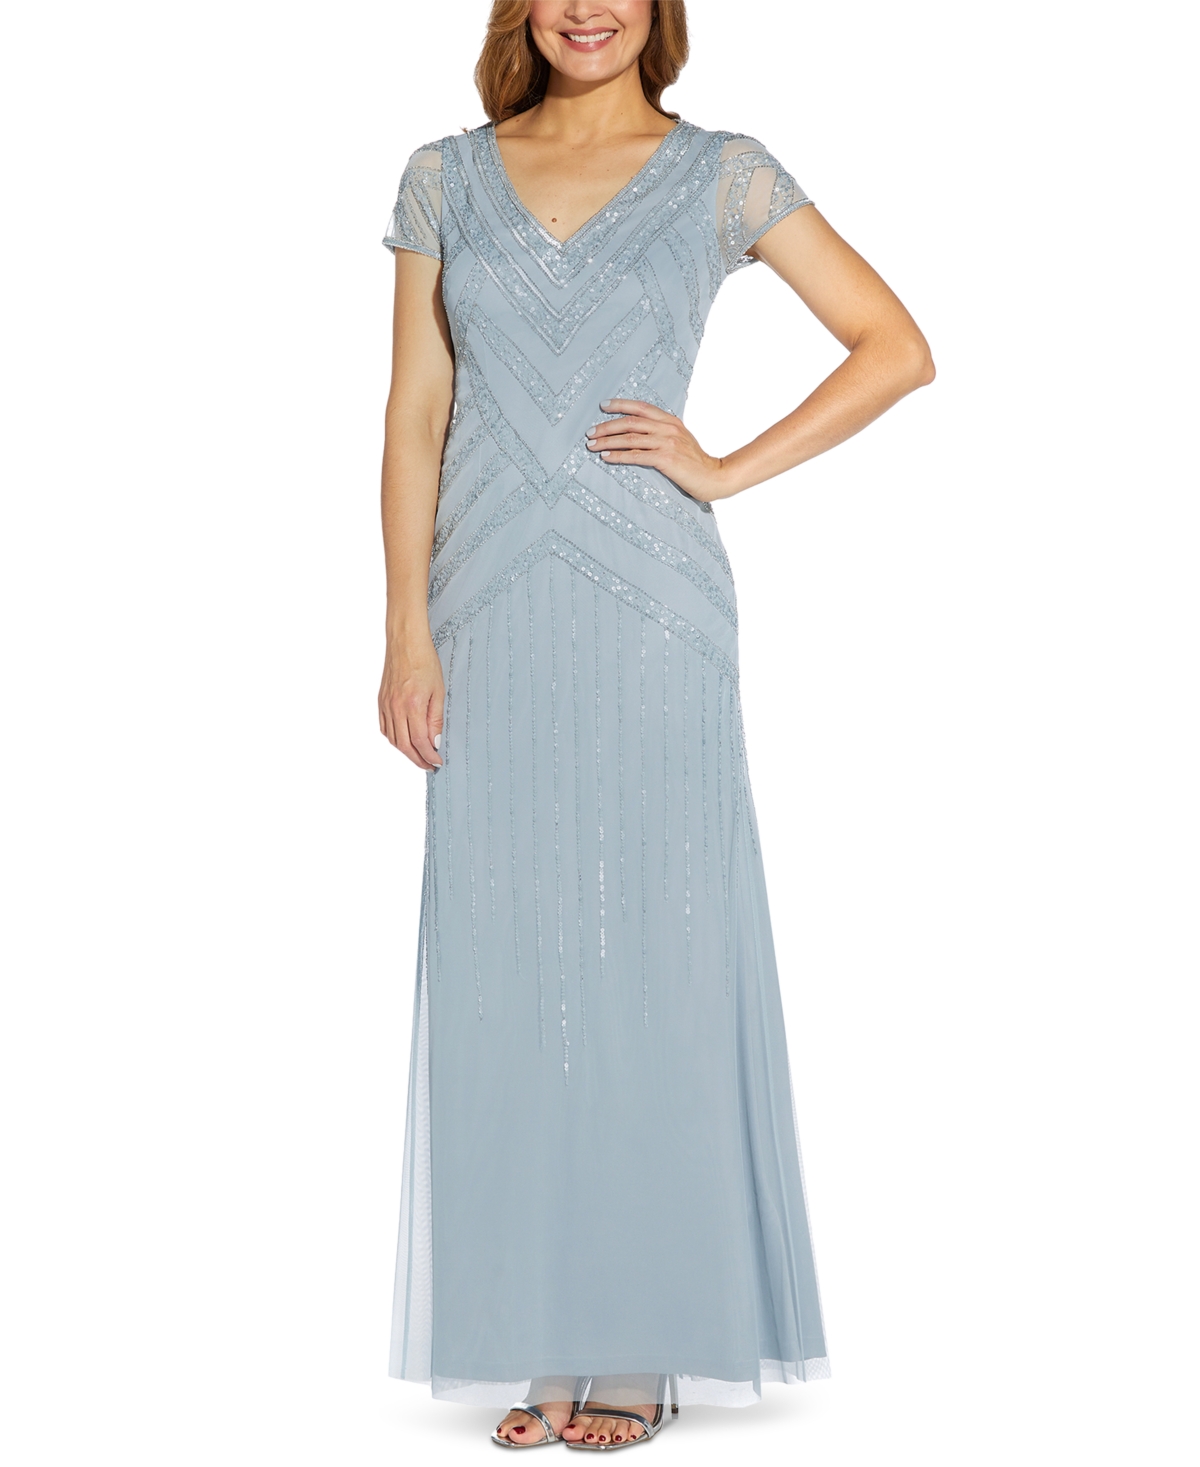 Vintage Evening Dresses Papell Studio Embellished V-Neck Gown $169.00 AT vintagedancer.com